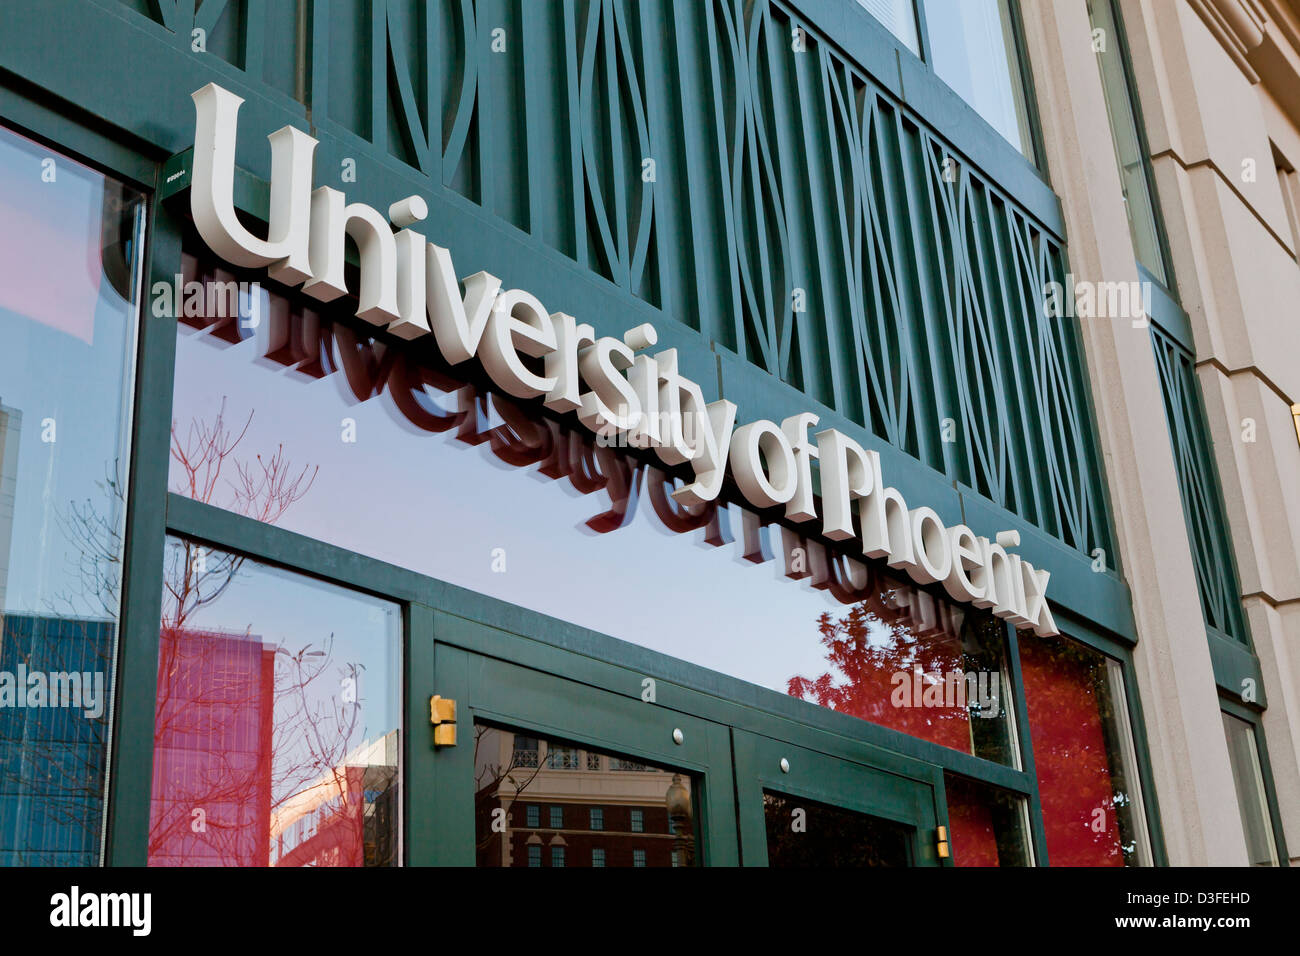 University of Phoenix sign - Washington, DC USA Stock Photo